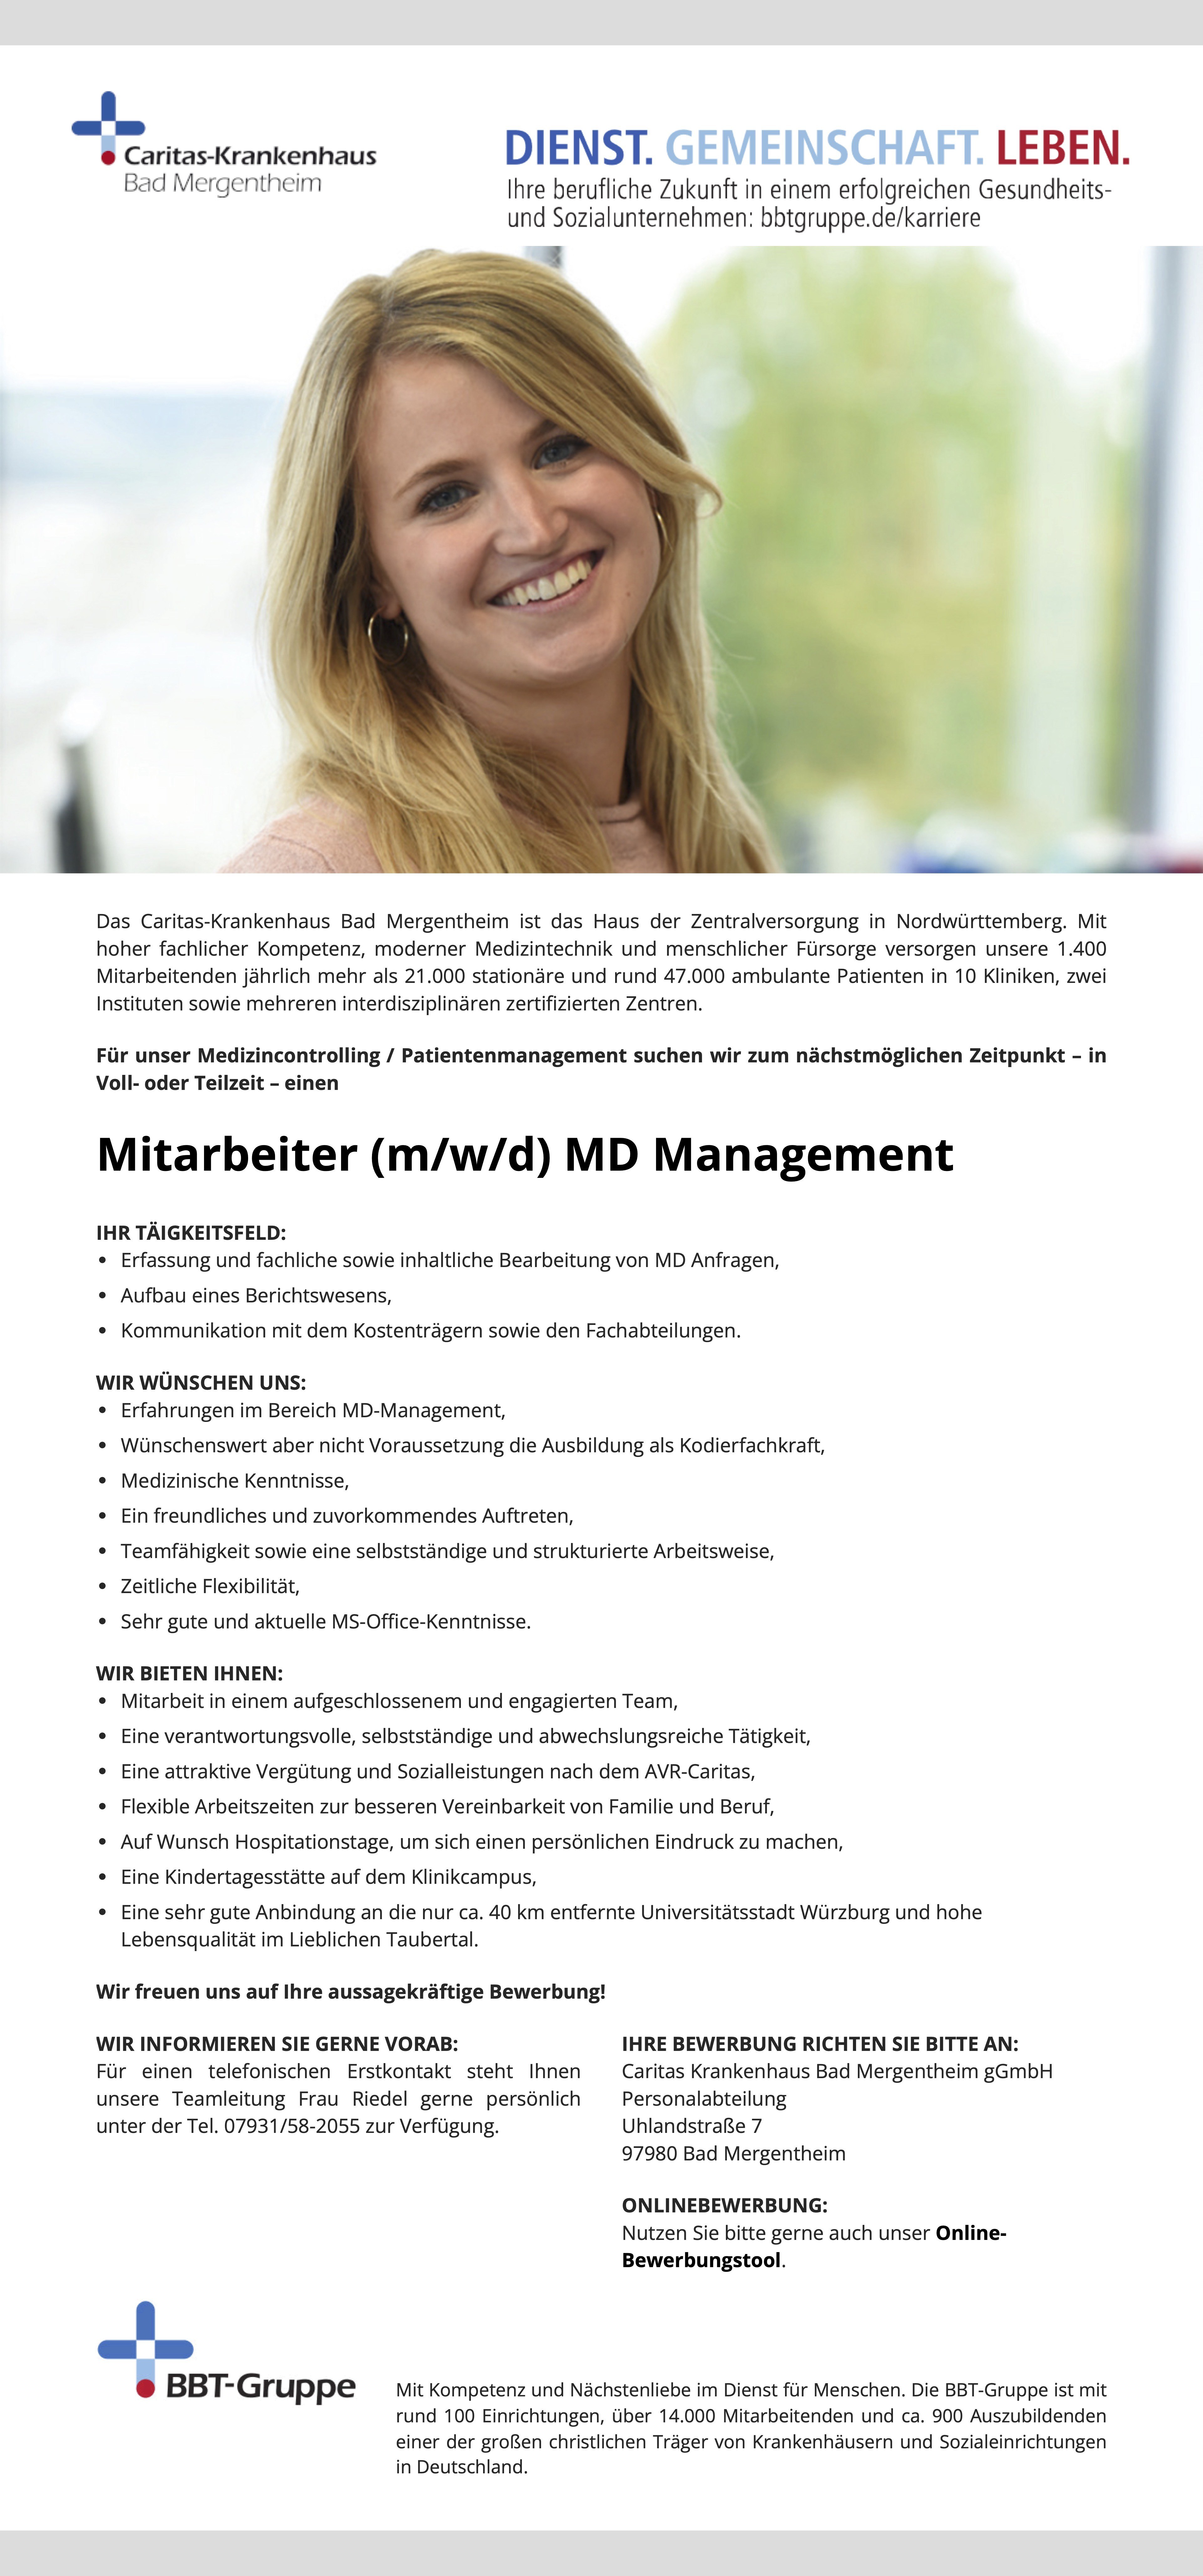 Mitarbeiter (m/w/d) MD Management